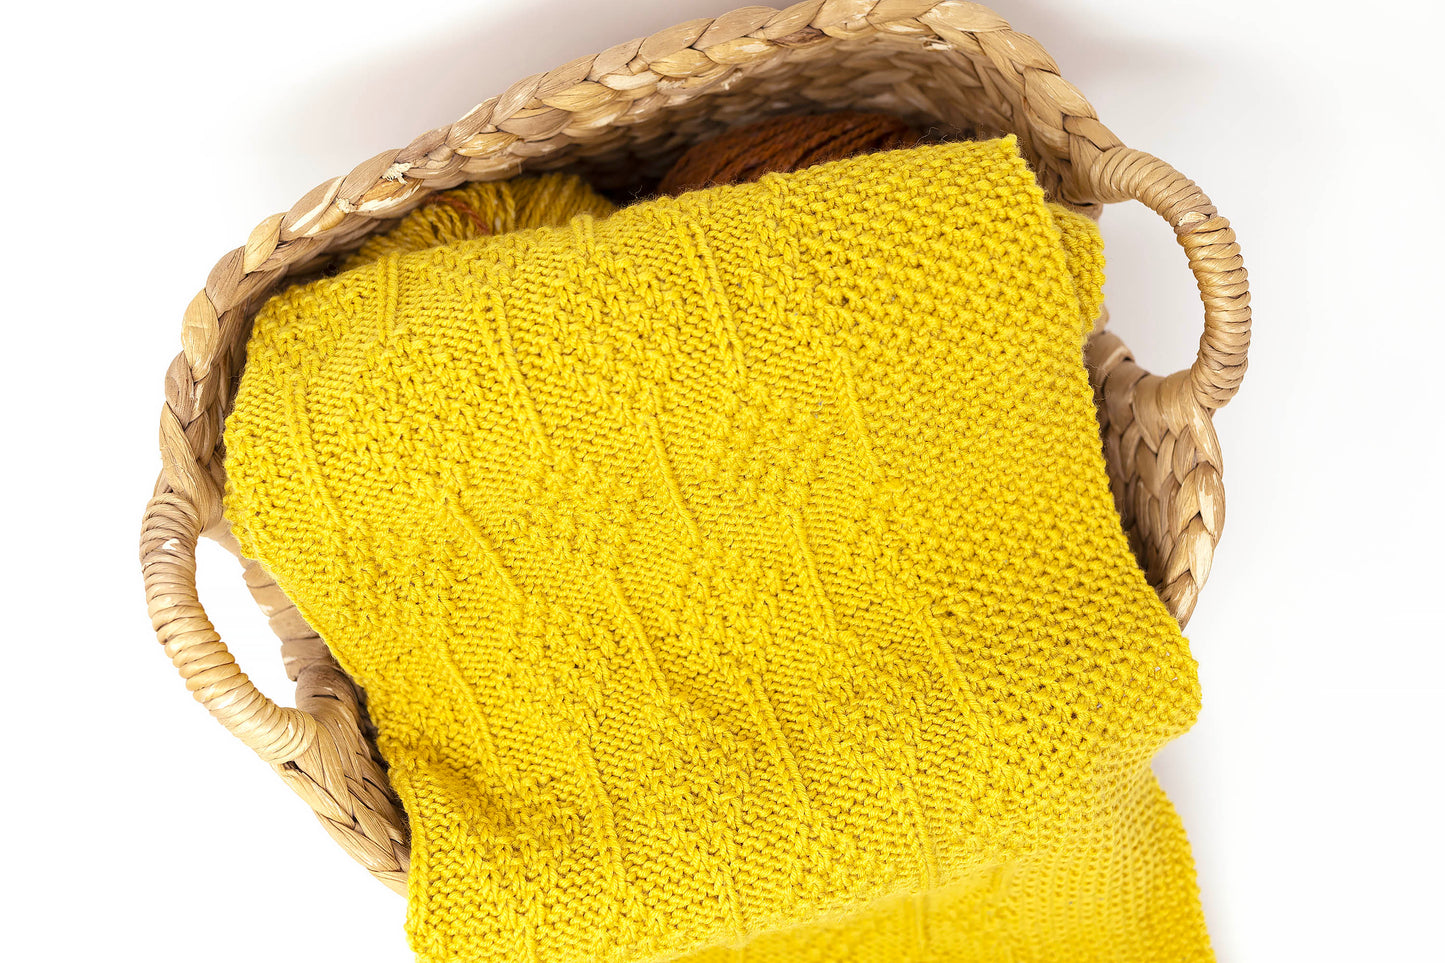 Yellow superwash merino wool DK yarn hand-knitted baby blanket in Diamonds knitting pattern